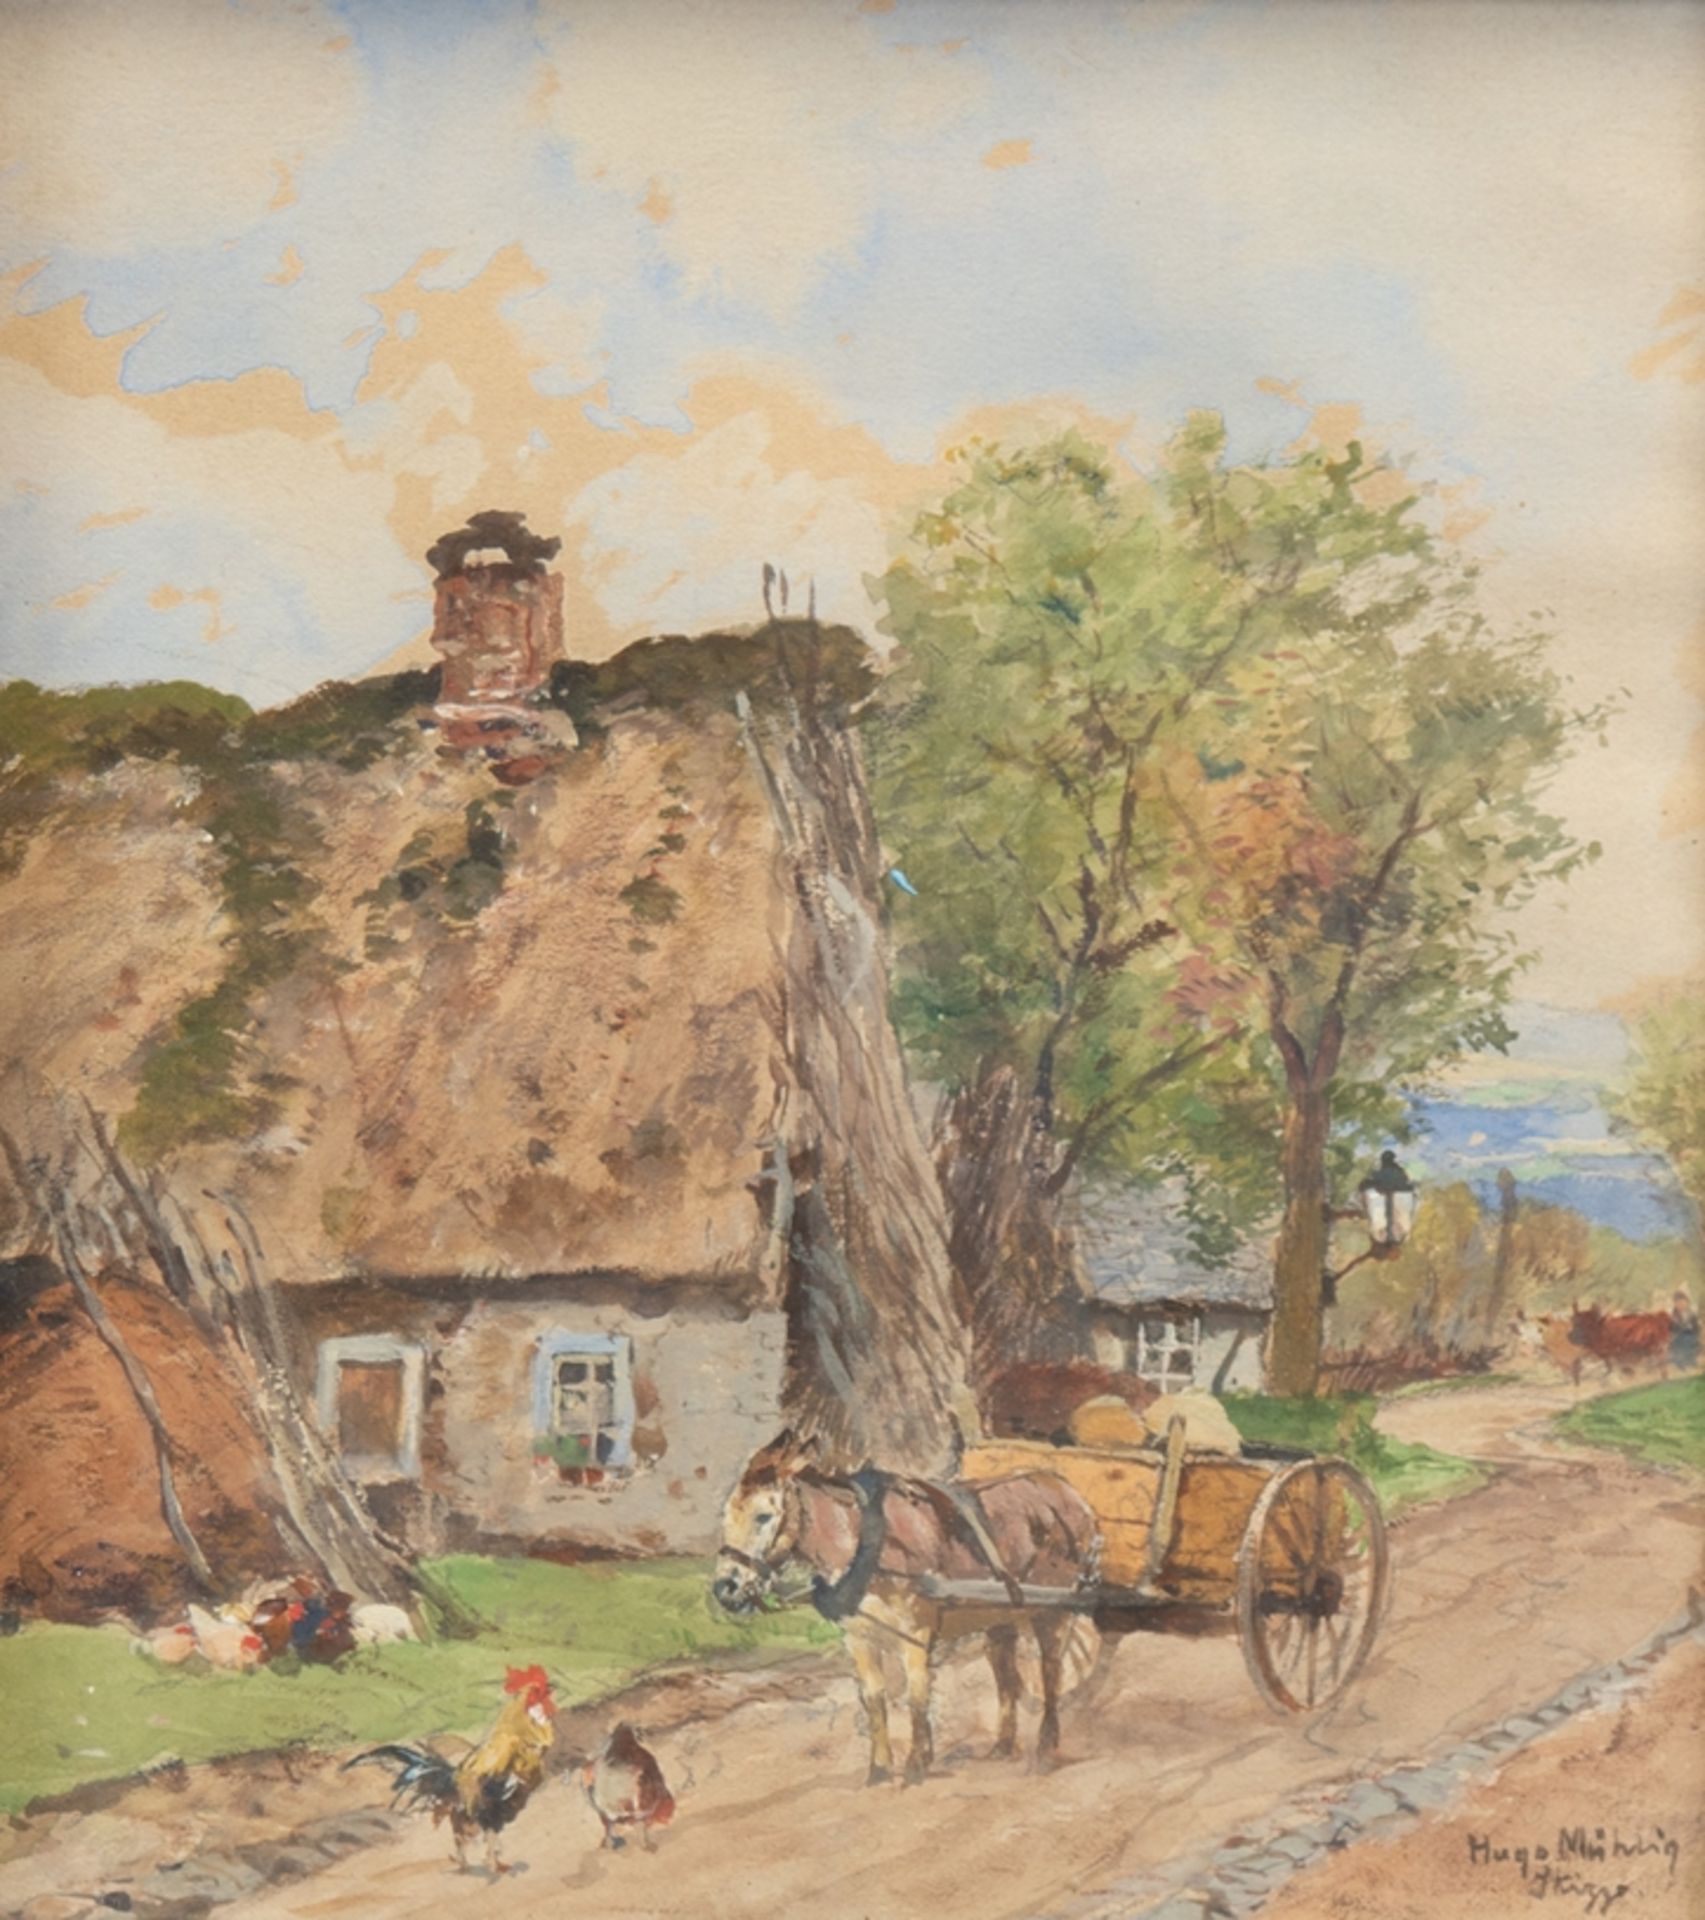 Mühlig, Hugo (1854 Dresden-1929 Düsseldorf) "Pferdekarren und Hühner vor Bauerngehöft", Aquarell, s